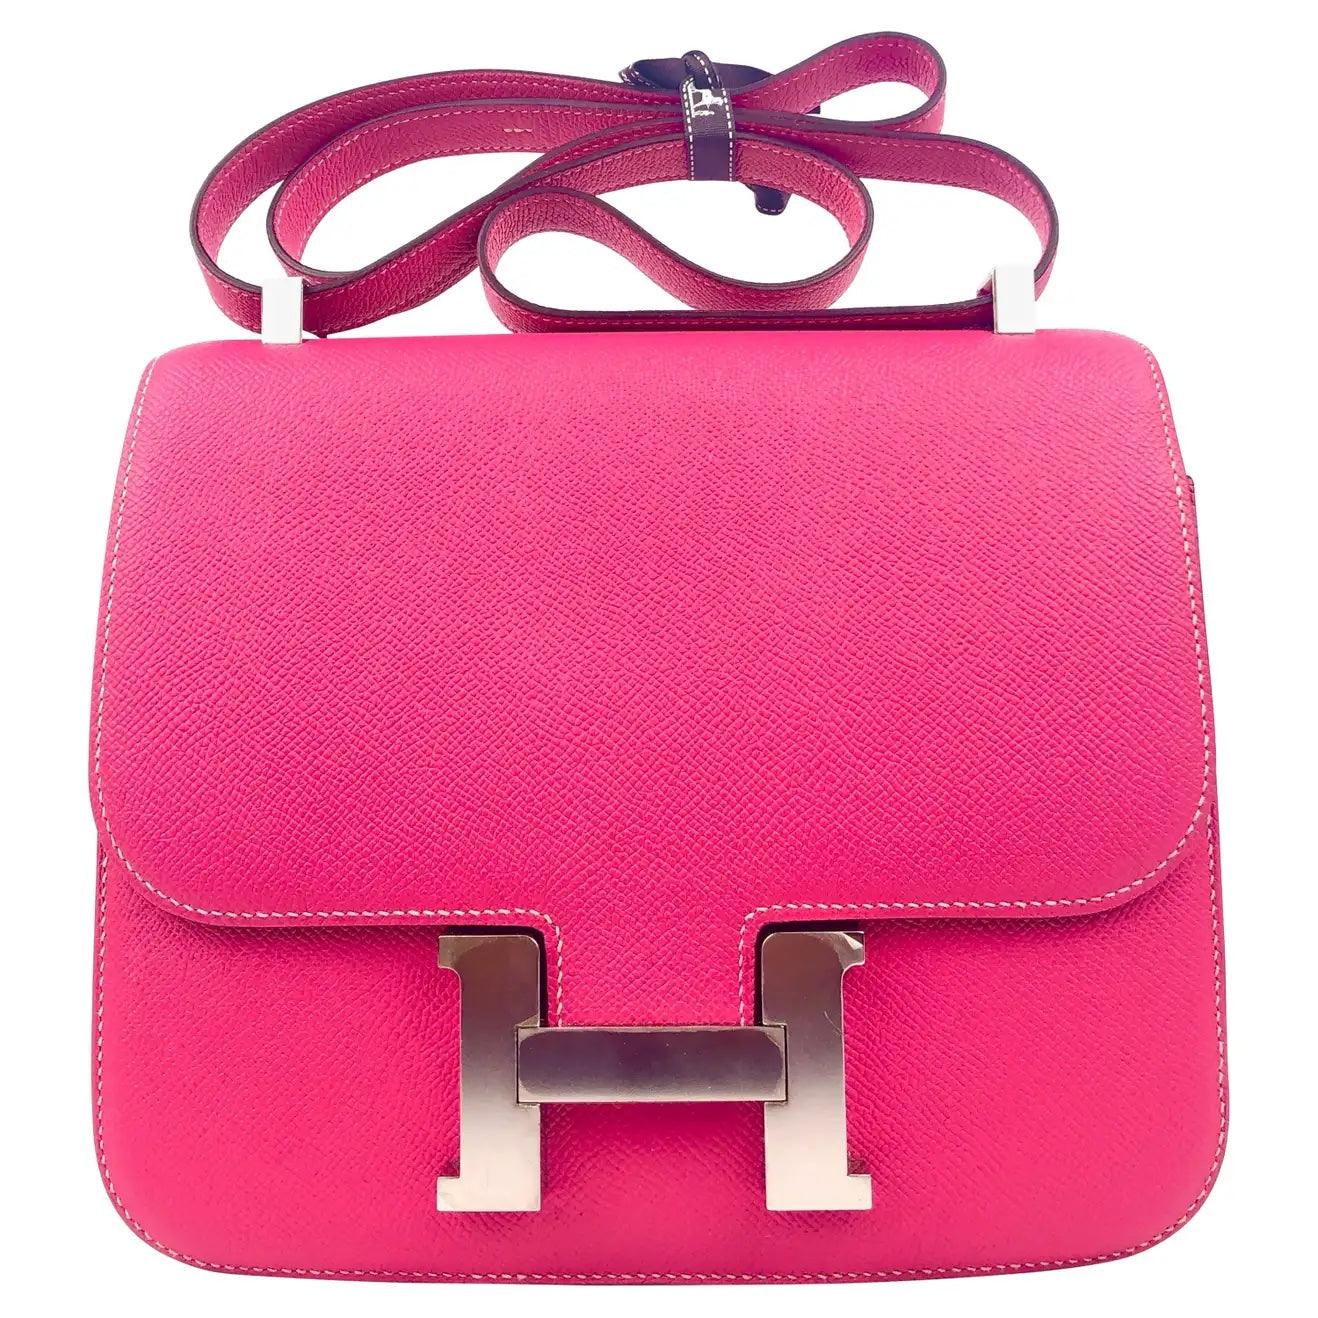 Hermes Bag Hook - 4 For Sale on 1stDibs